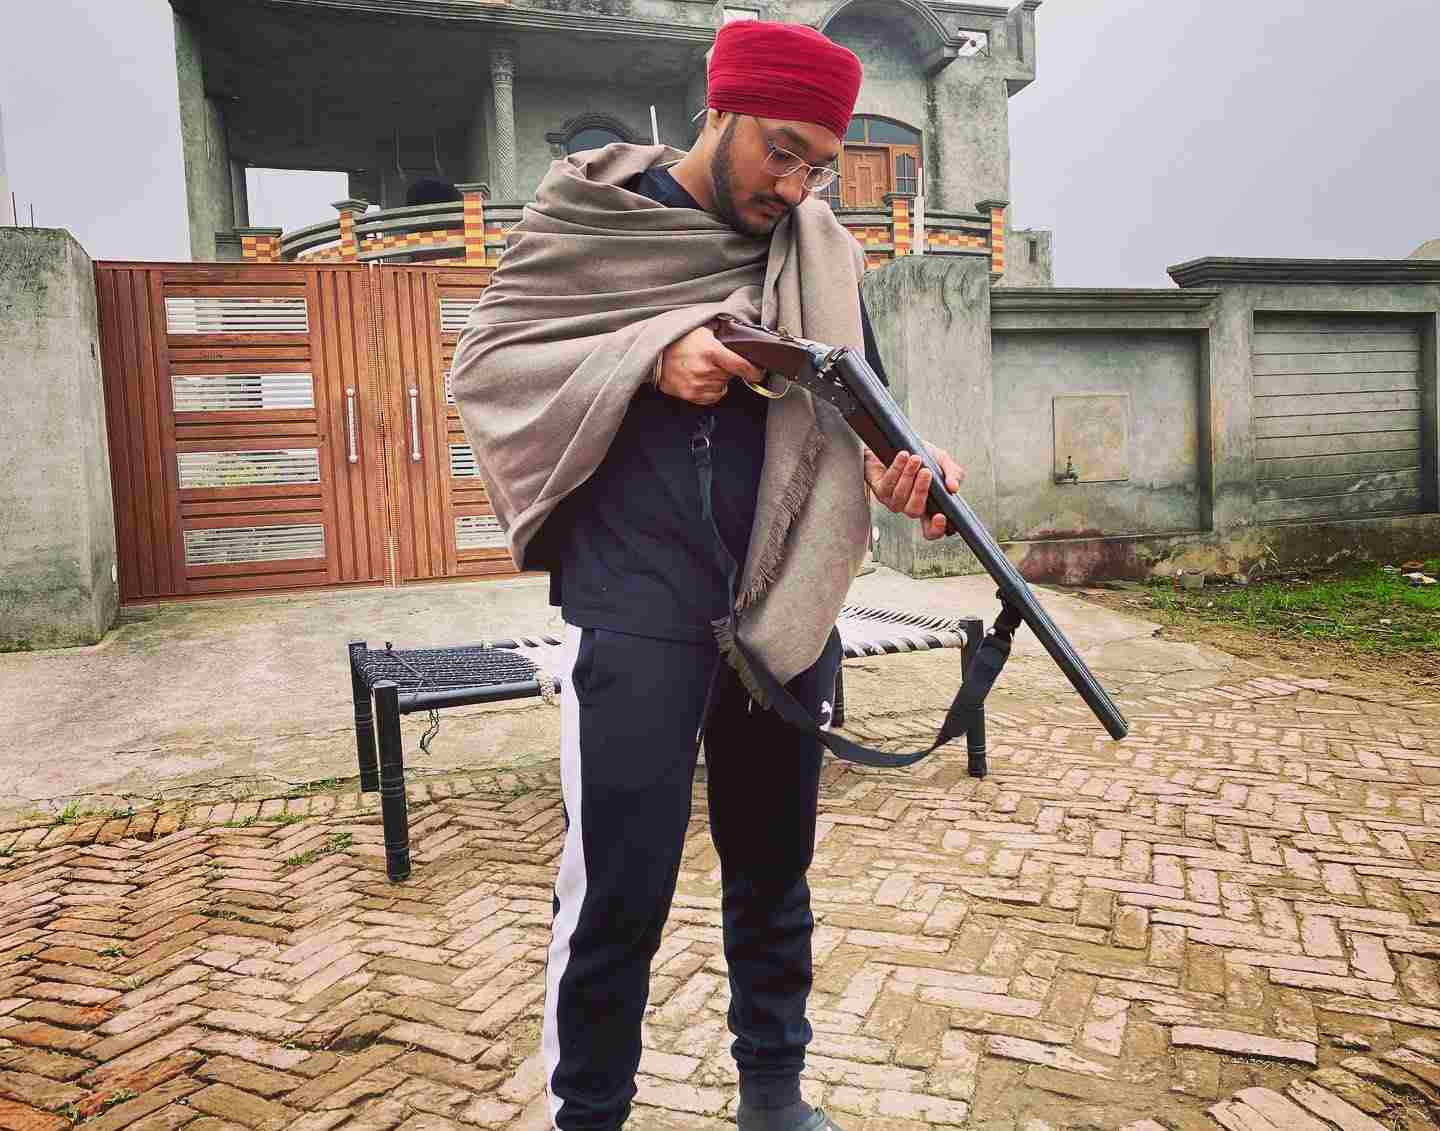 A photo of Riar Saab with a gun